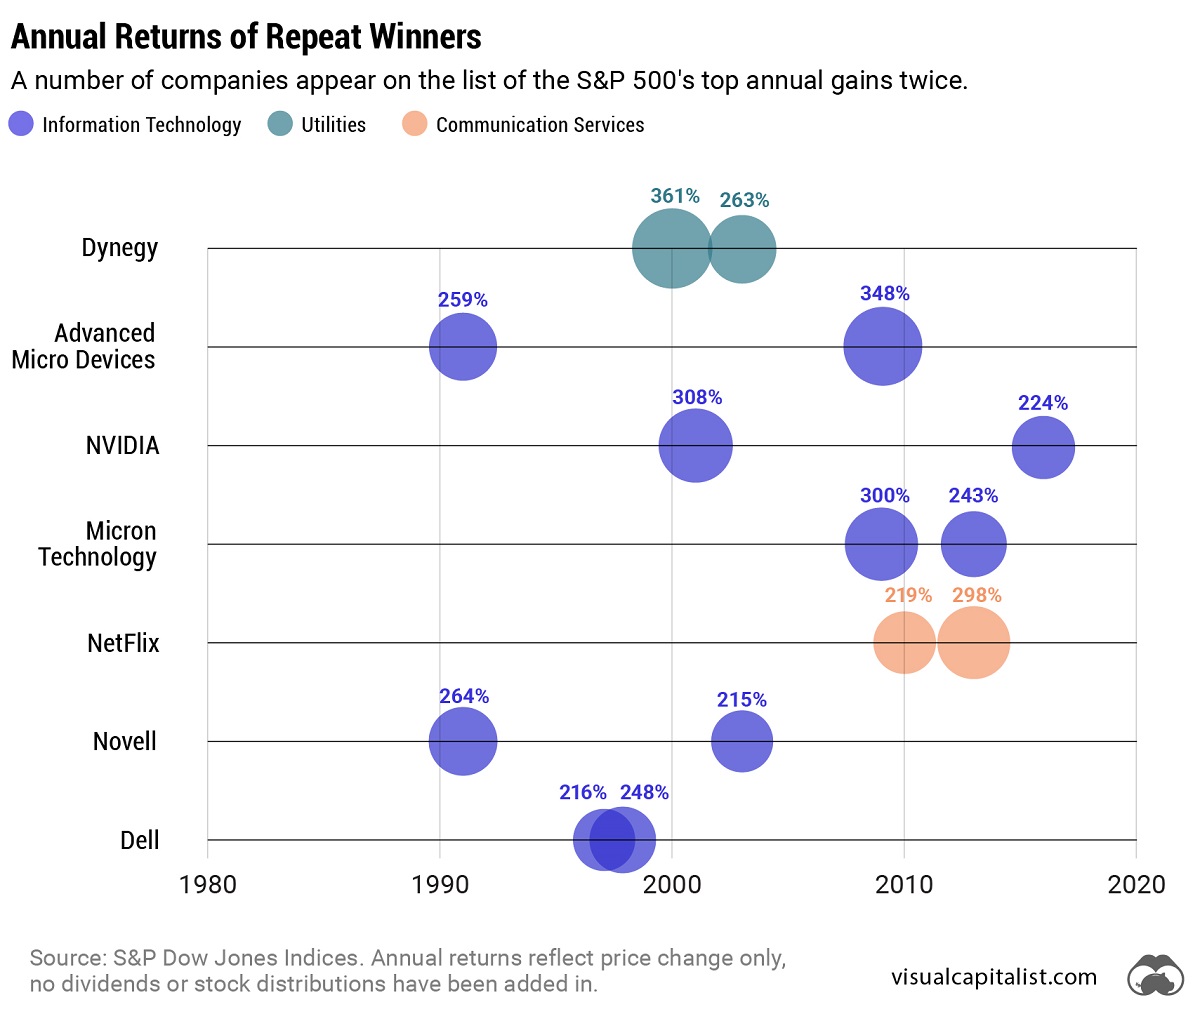 Acciones que han aparecido en la lista de las principales ganancias anuales del S&P 500 más de una vez, organizadas en una línea de tiempo con burbujas dimensionadas por el monto de retorno.  Dell hizo la lista consecutiva en 1997 y 1998.